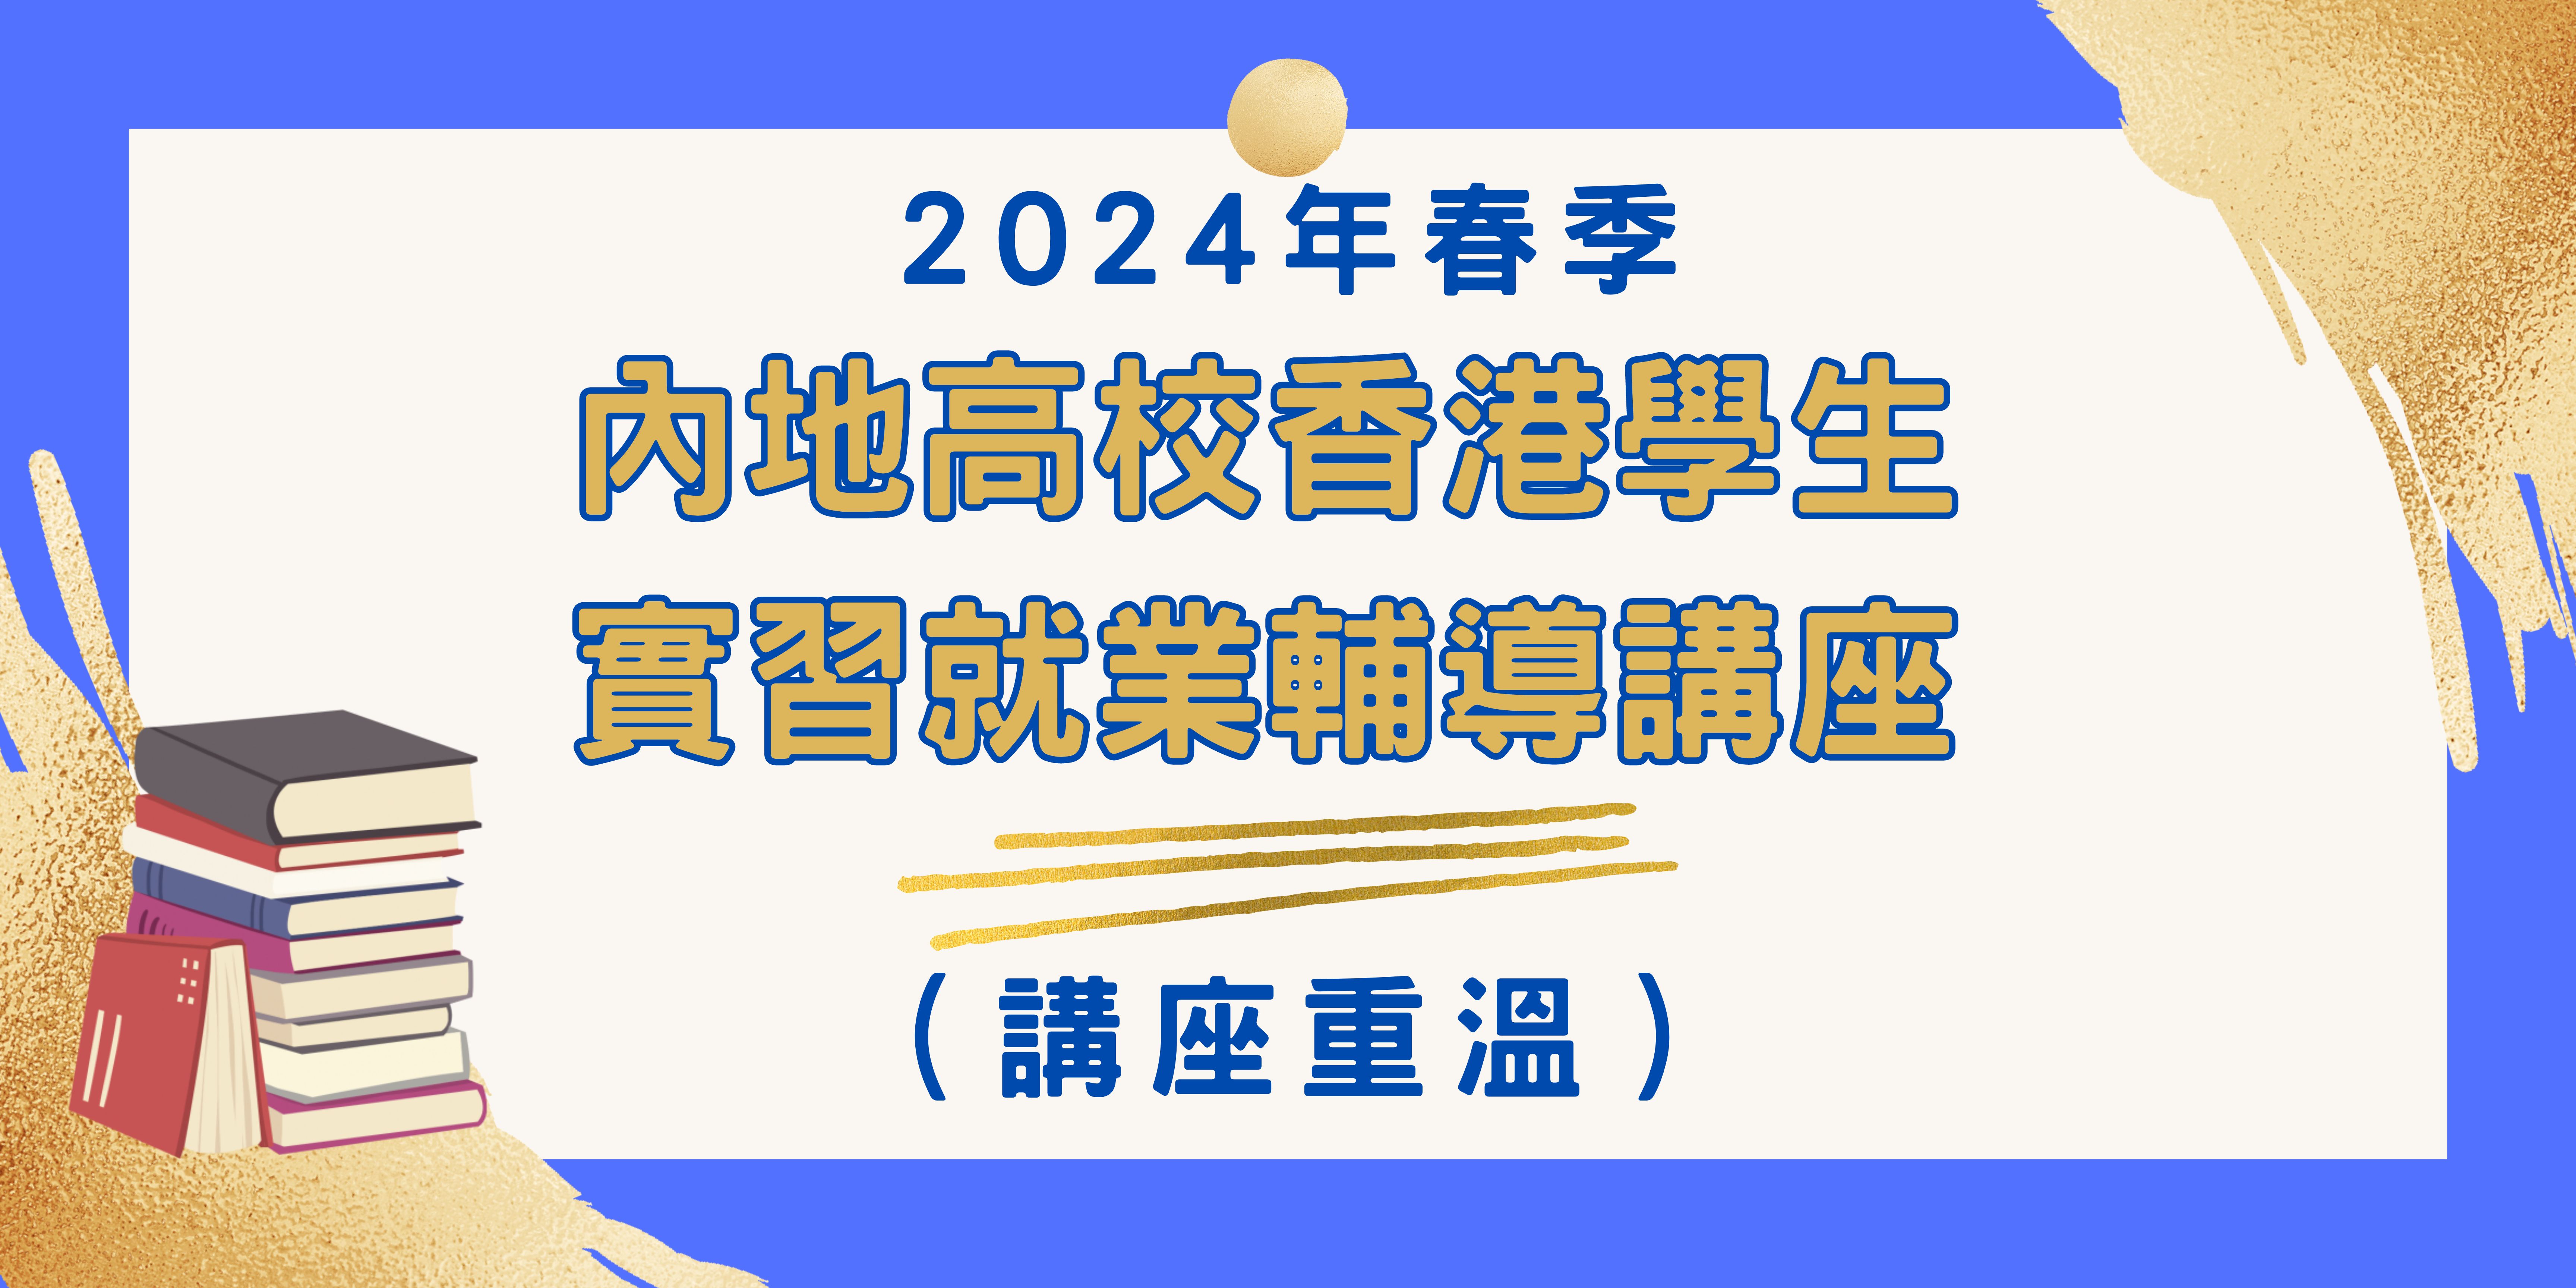 2024年春季內地高校香港學生實習就業系列輔導講座 講座重溫